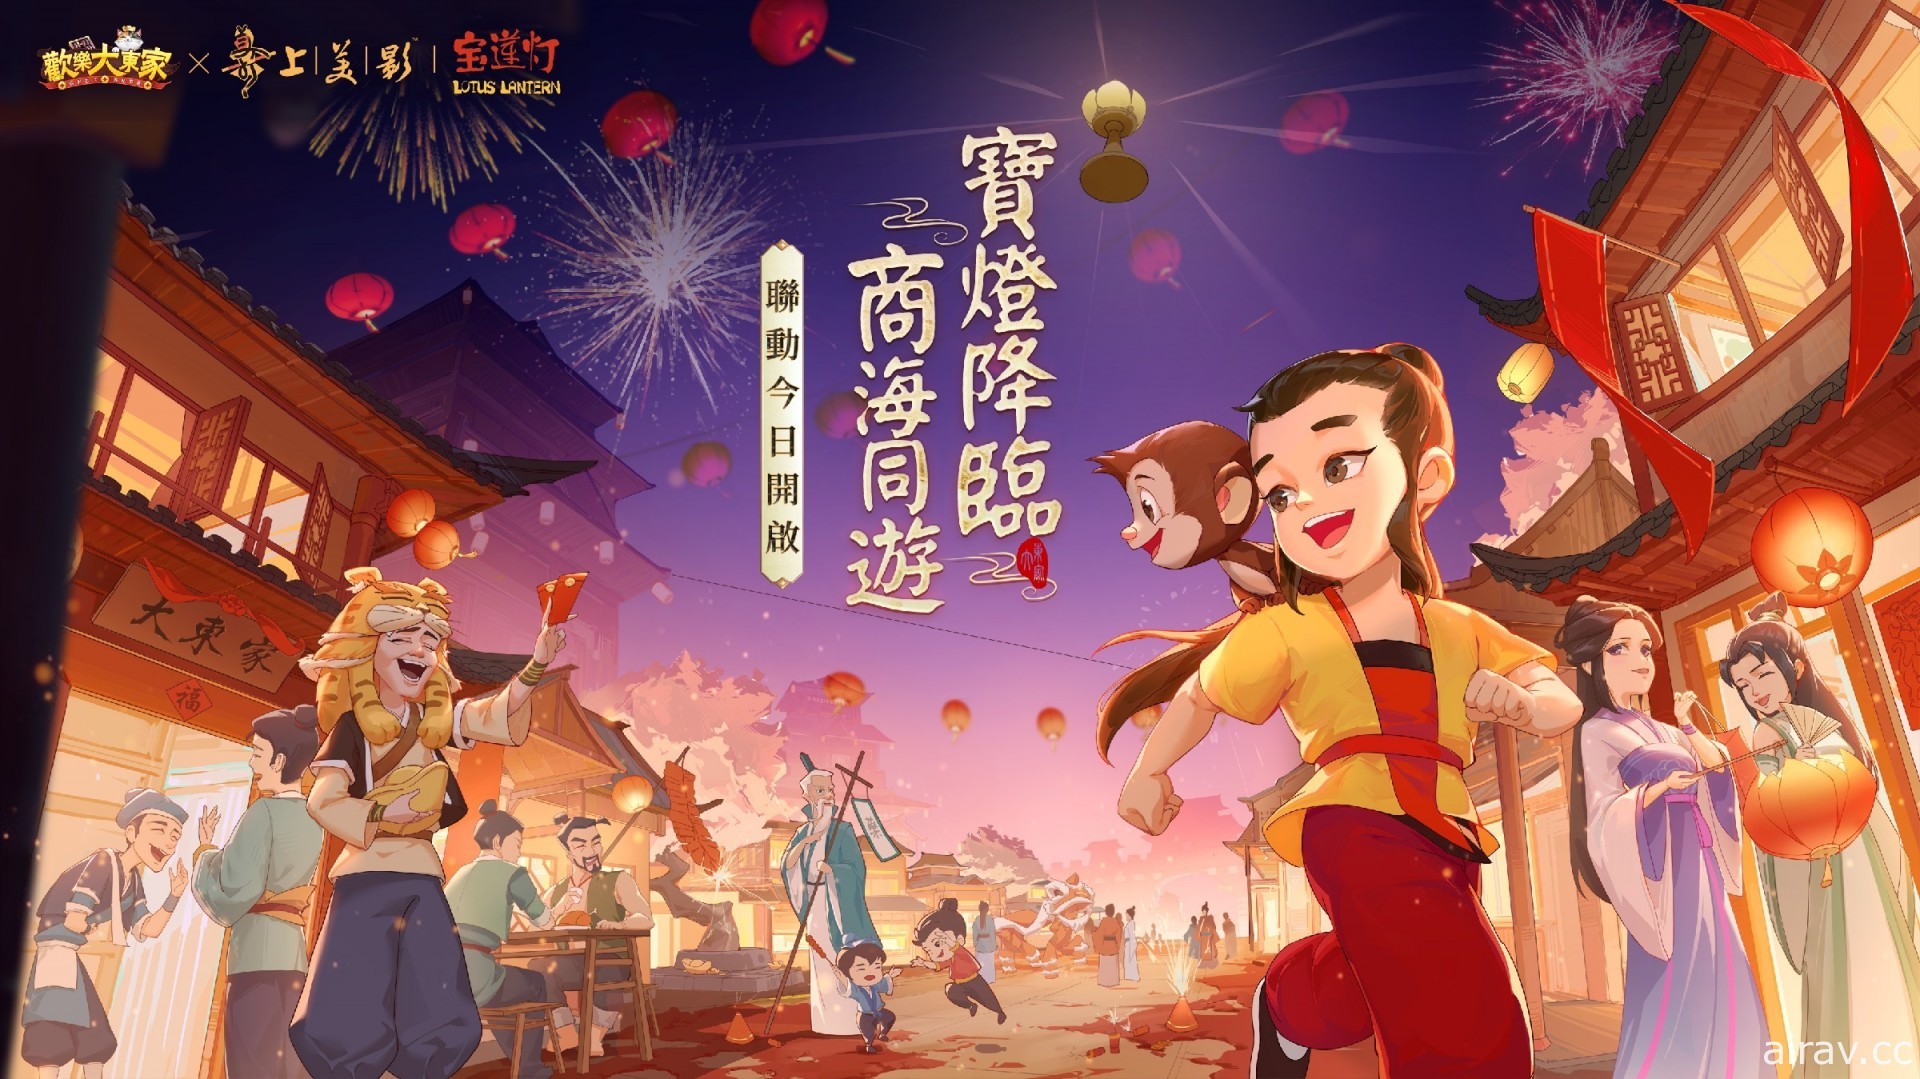 《歡樂大東家》x《寶蓮燈》聯動確定 新春版本 1 月 22 日正式開放